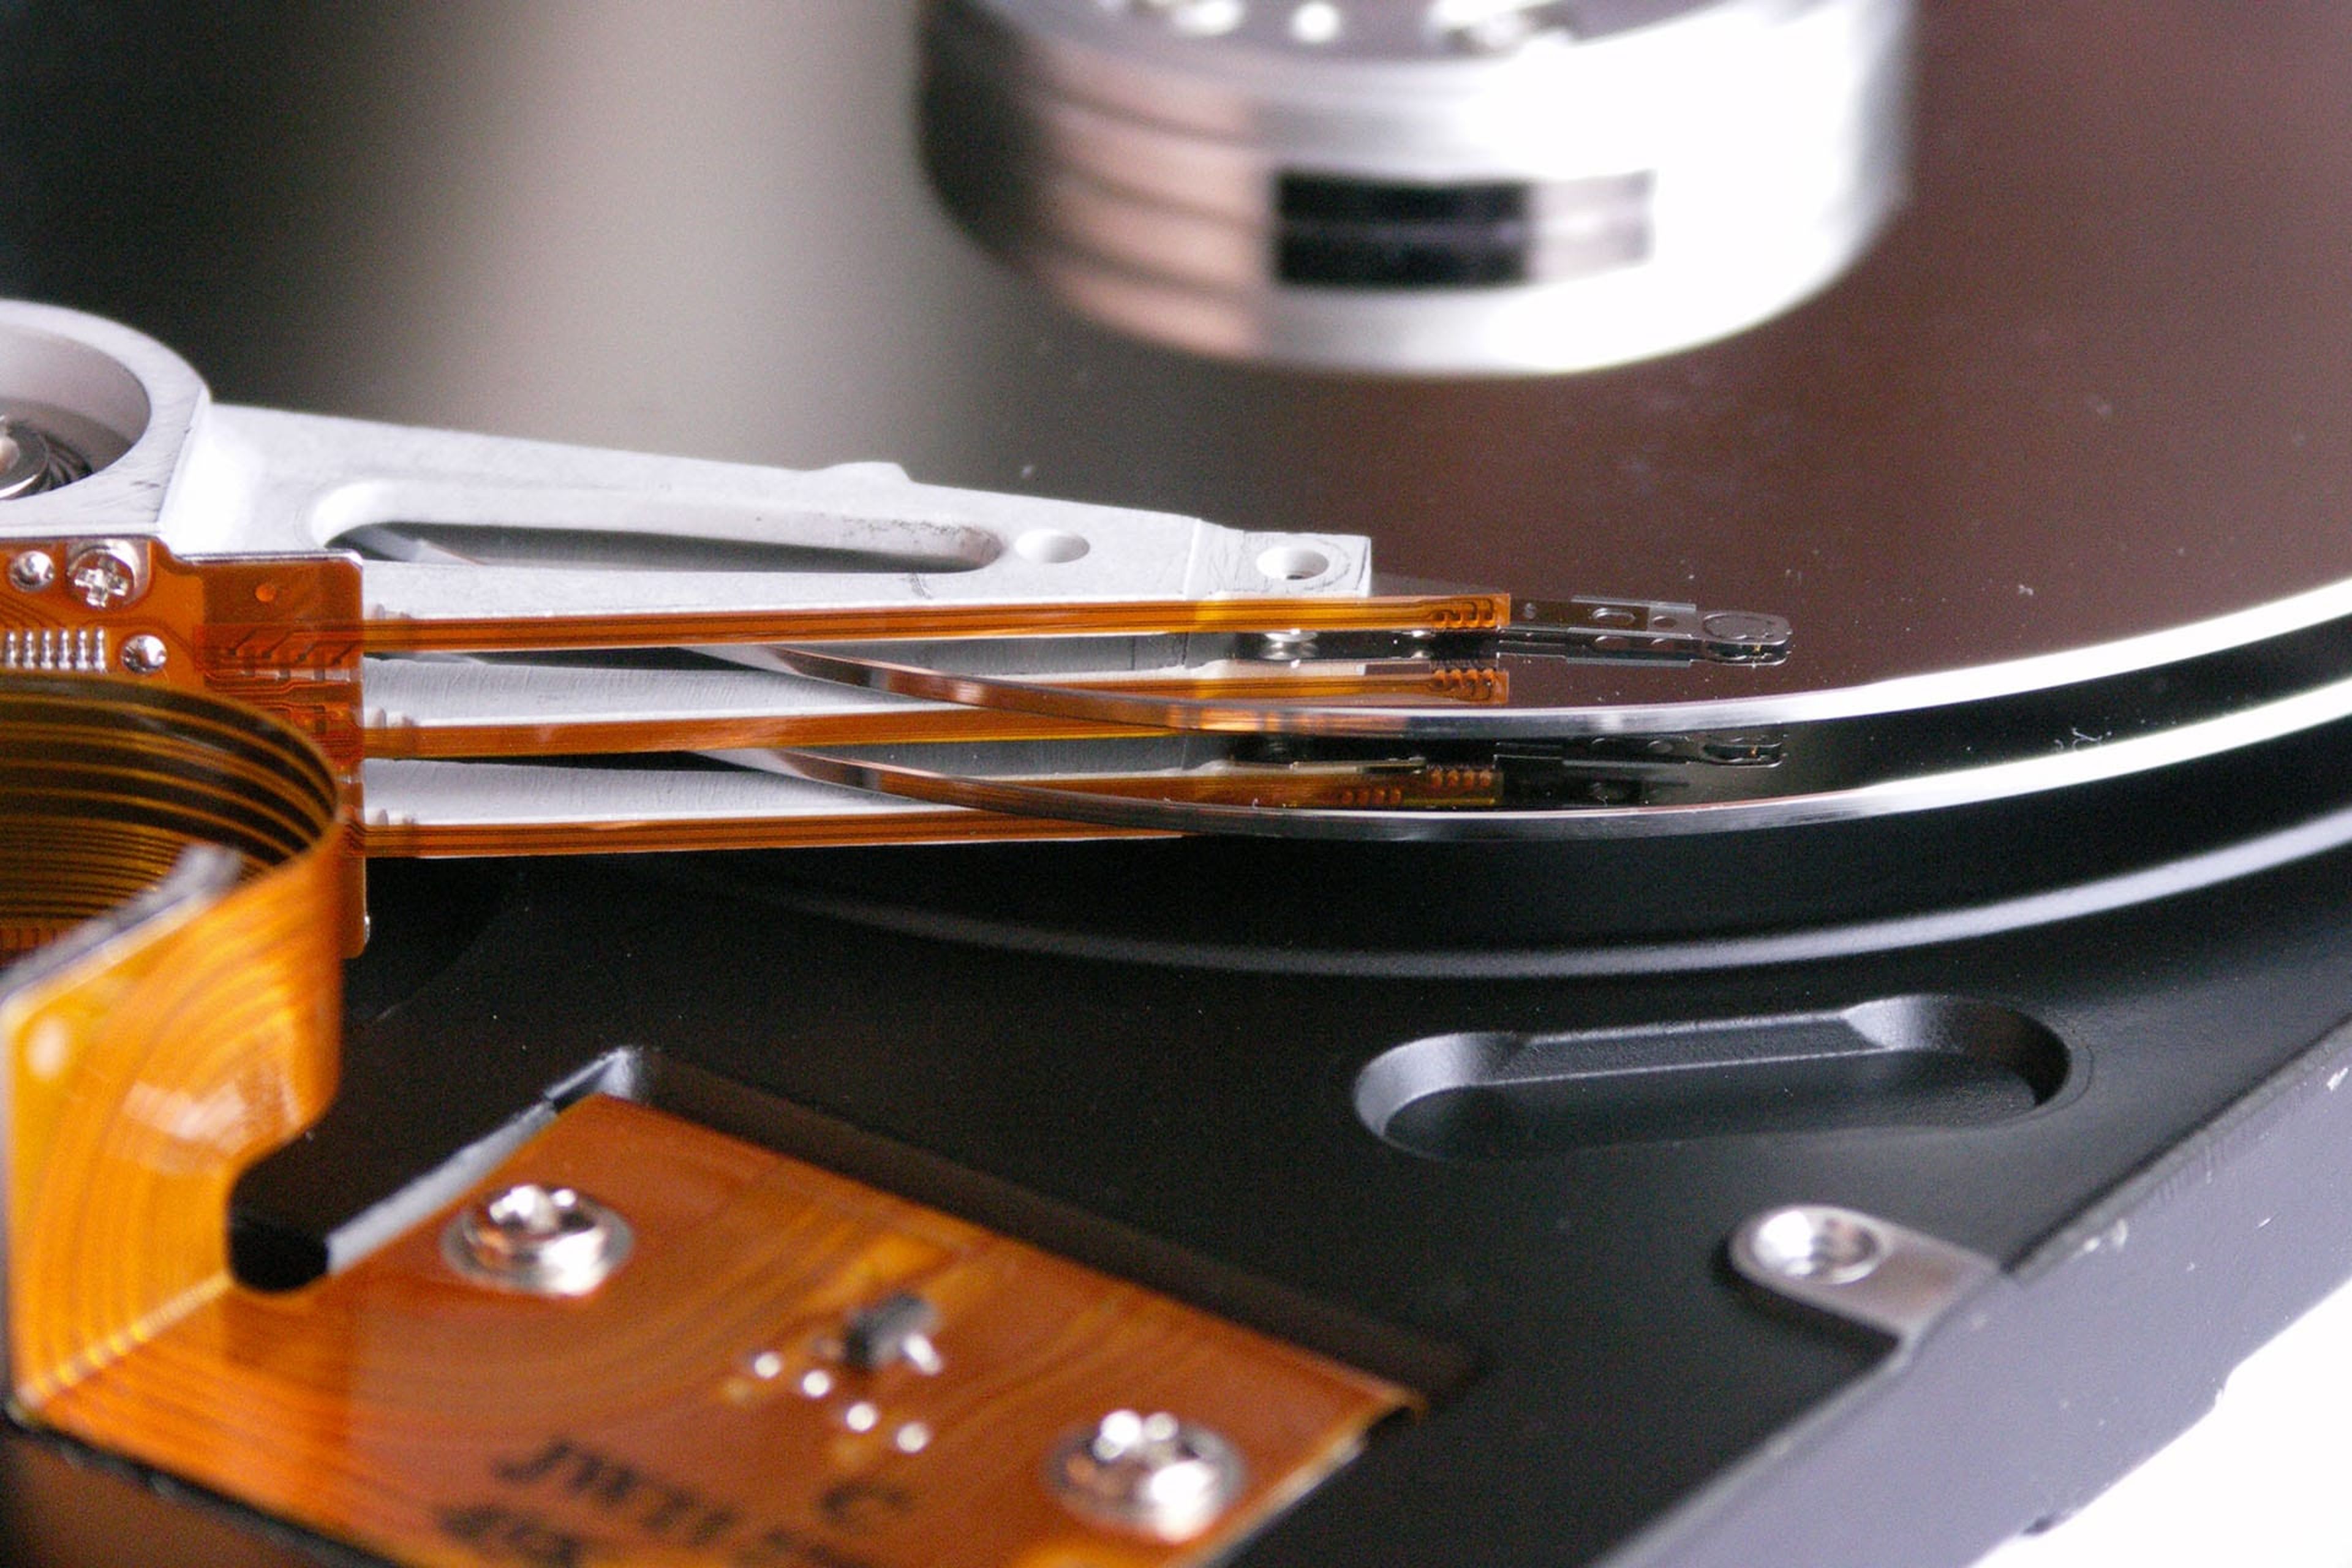 Amplía la memoria de tu consola con estos 5 discos duros disponibles en eBay